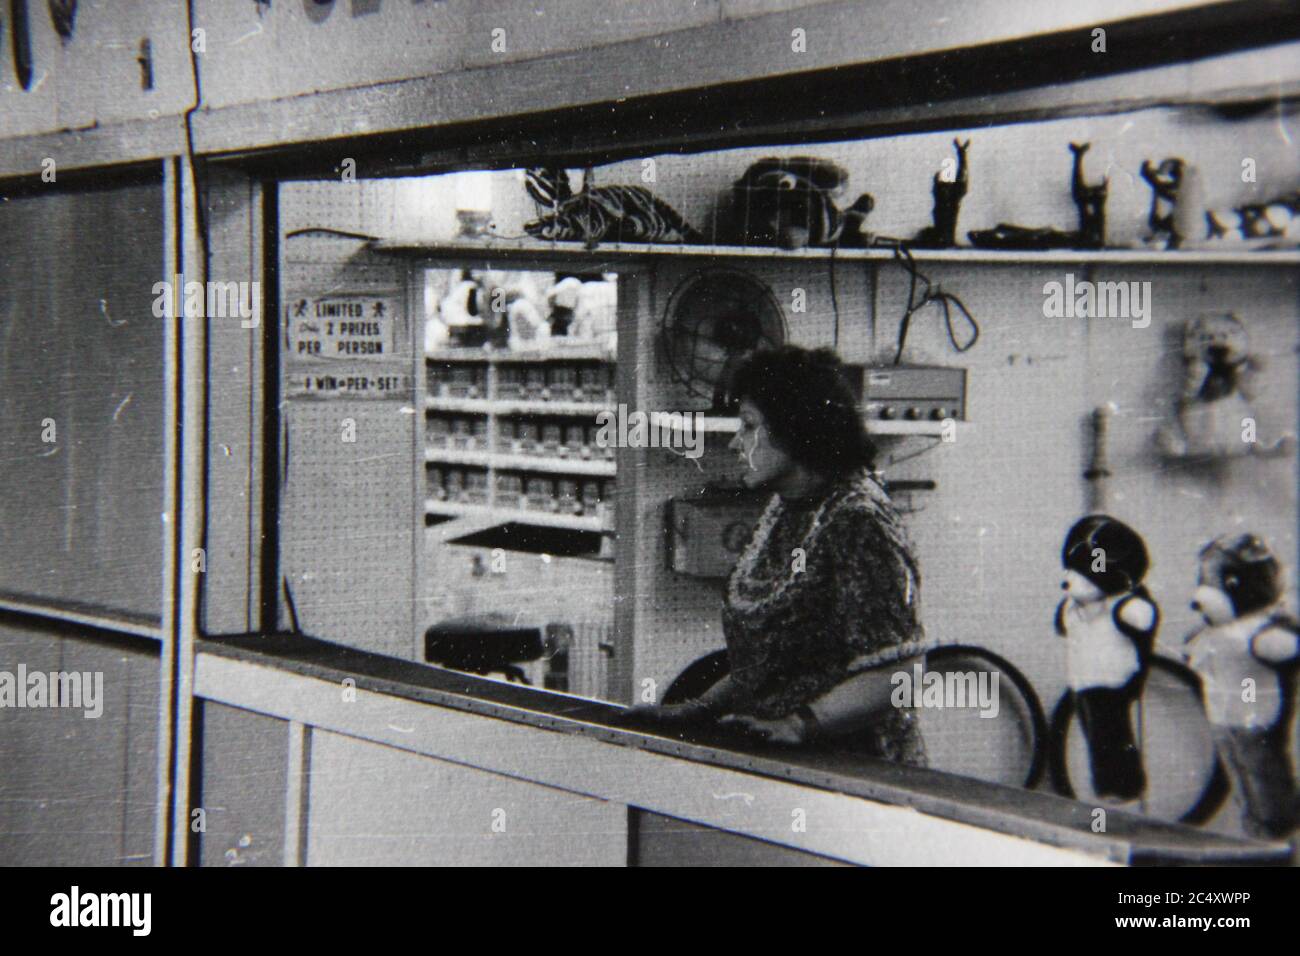 Bella fotografia in bianco e nero d'epoca degli anni '70 di un lavoratore carnoso in mezzo a una depressione estrema e angoscia mentale. Foto Stock